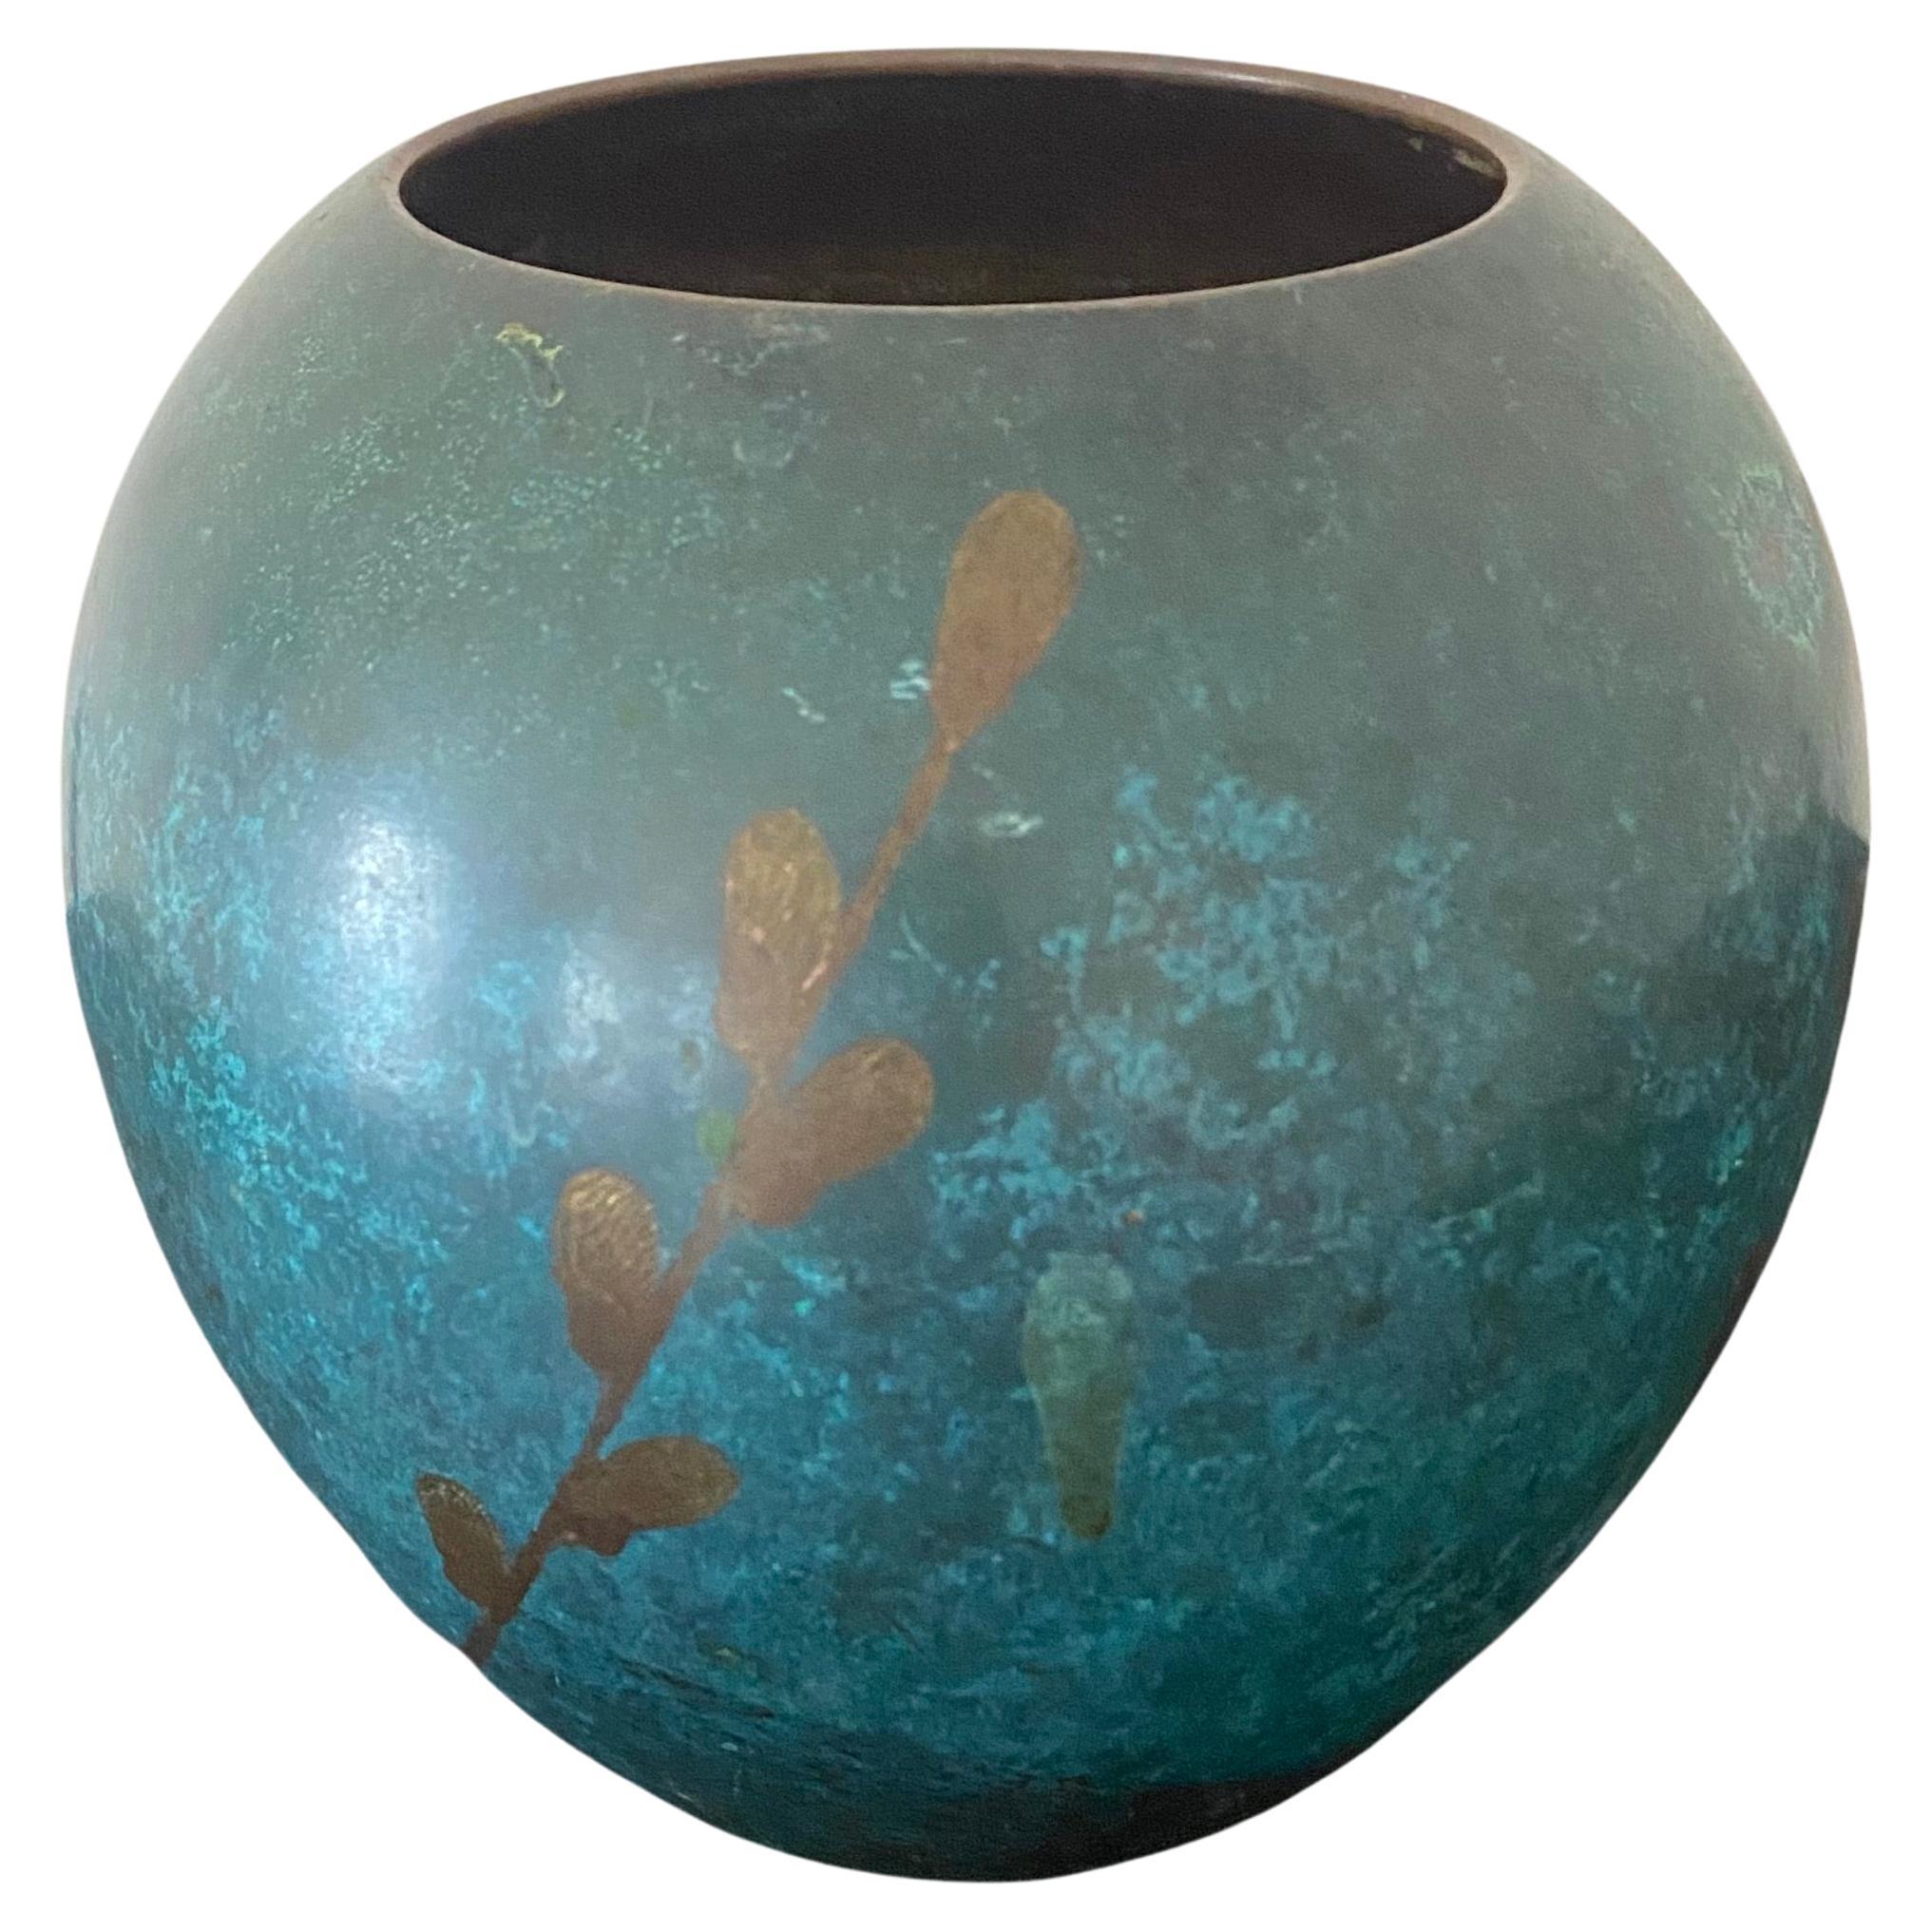 Ce vase Ikora de WMF (Württembergische Metallwarenfabrik), en bronze patiné, est orné d'un motif de branches de saule stylisées de Paul Haustein (1880-1944) datant des années 1920. La forme arrondie et bulbeuse du vase met en valeur un motif en